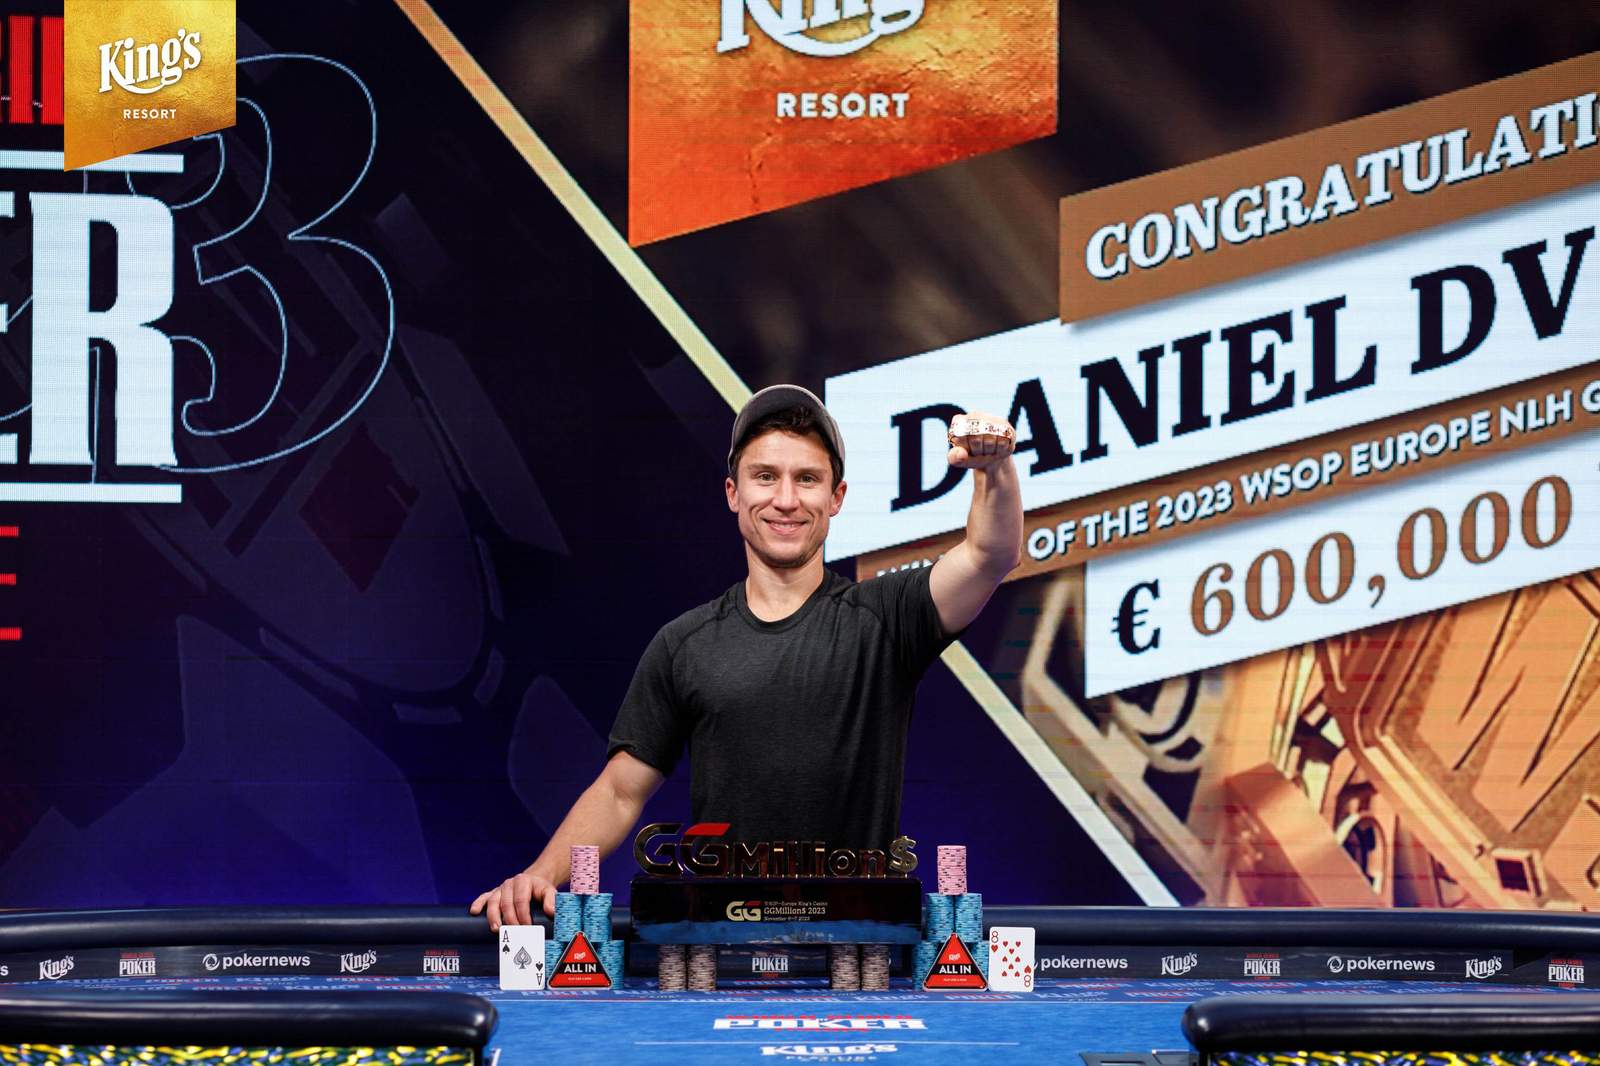 Daniel Dvoress Wins 2nd WSOP Bracelet in €25K GGMillion€ for €600K